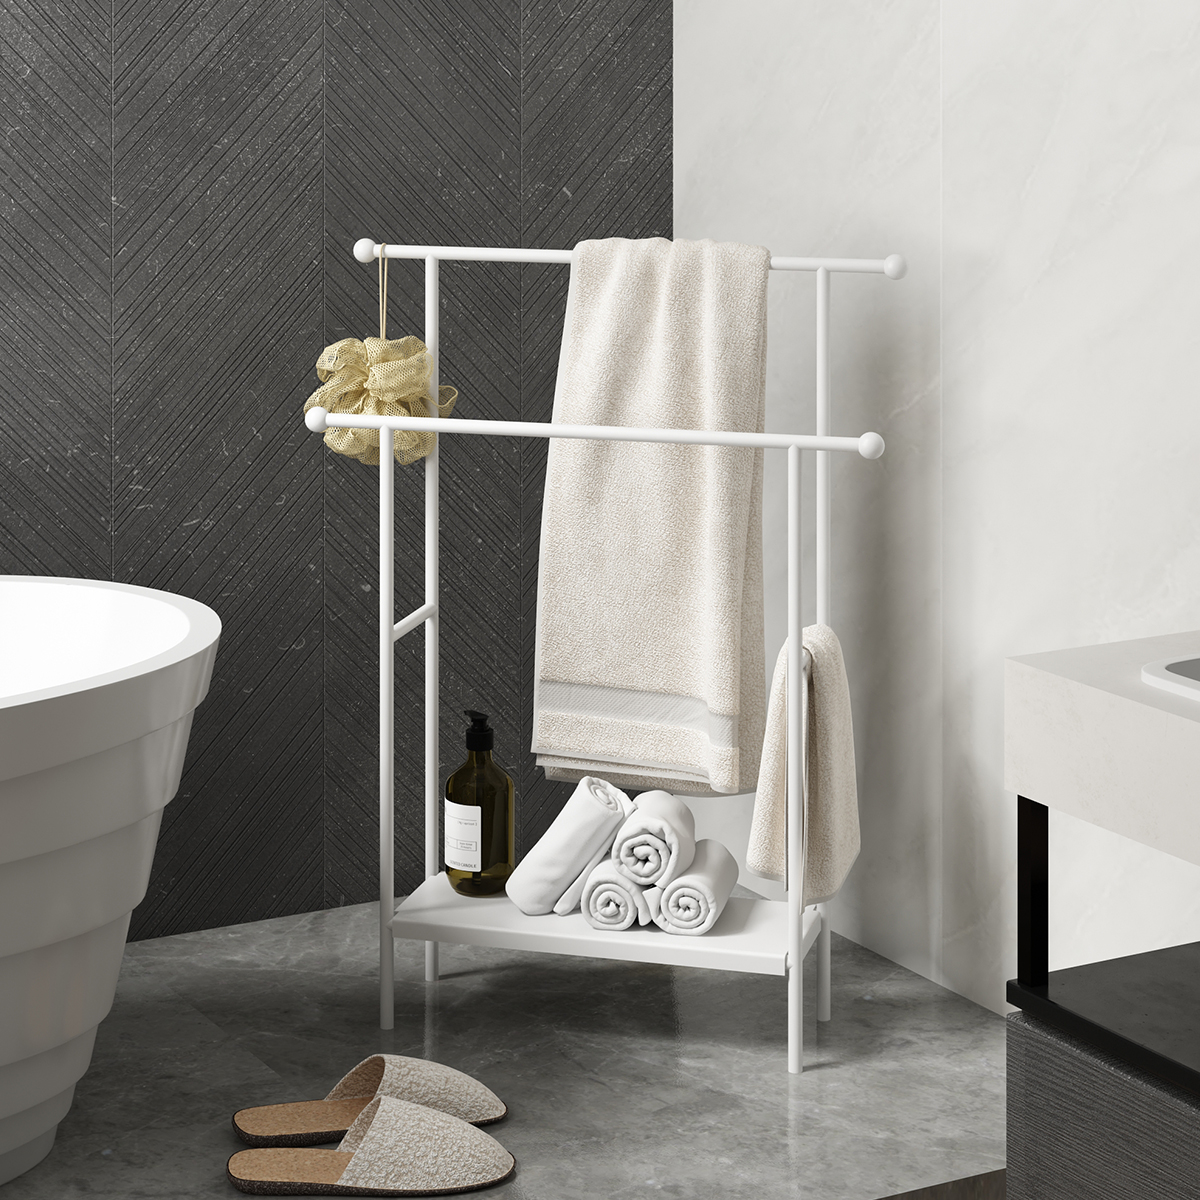 北欧风家用卫生间落地式浴缸边毛巾架浴巾架可移动多功能置物架子